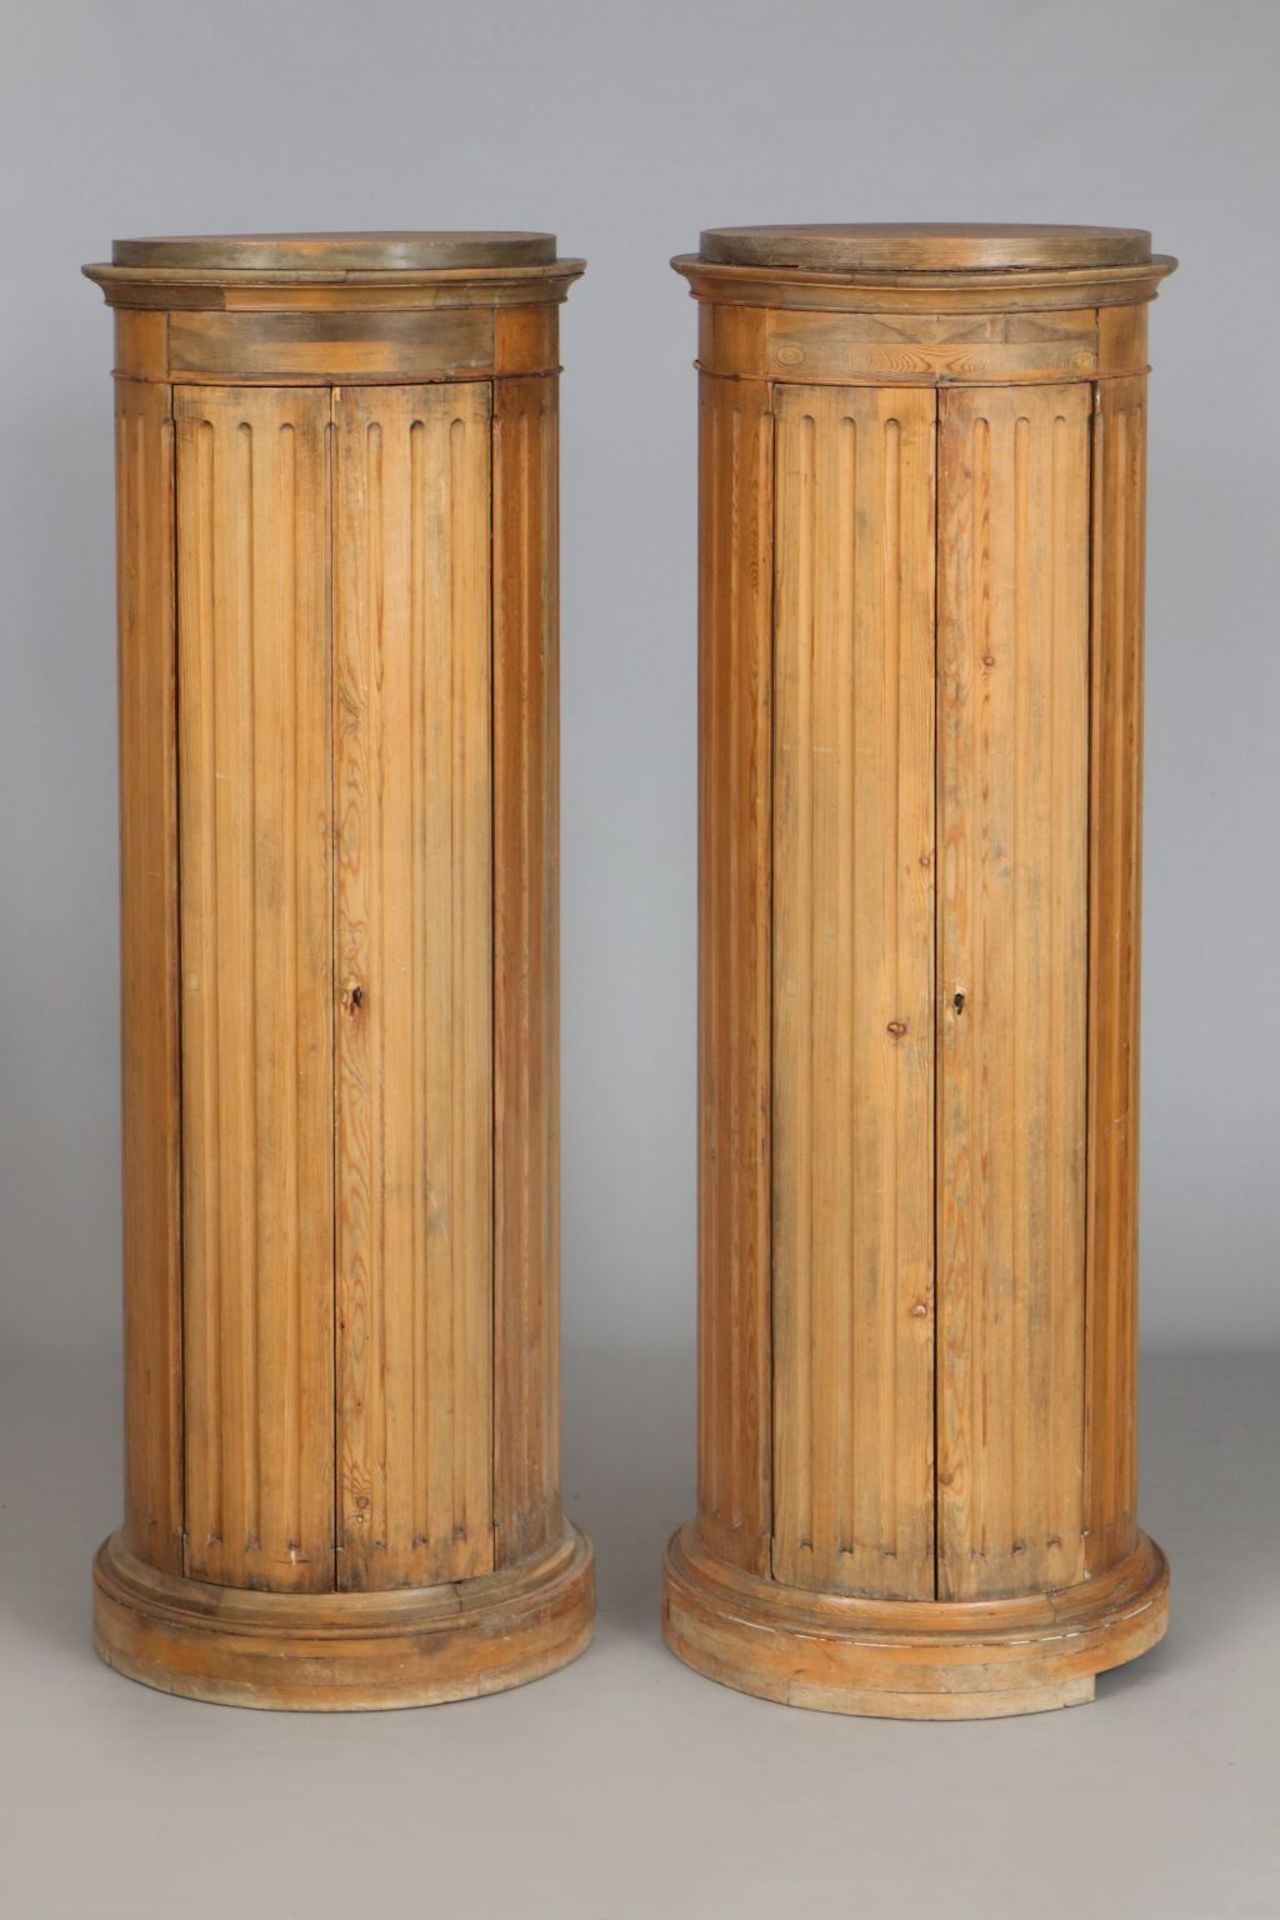 Paar Biedermeier Säulenschränkenorddeutsch, um 1820, hoher 7/8 runder Korpus mit 2 kanneliert